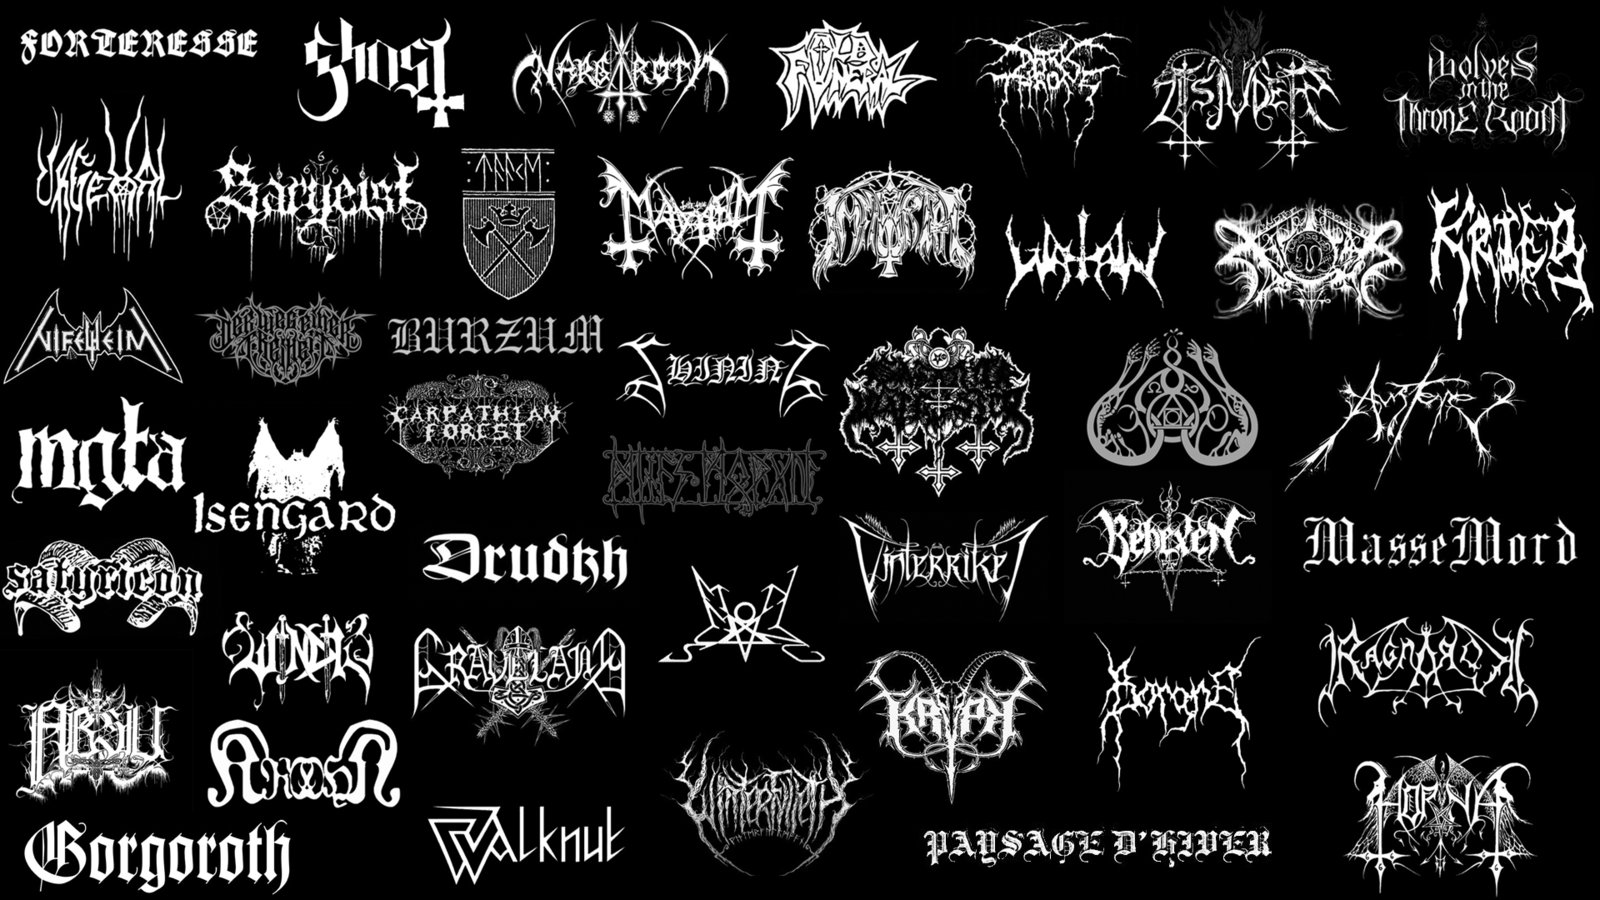 74+] Black Metal Wallpaper - WallpaperSafari